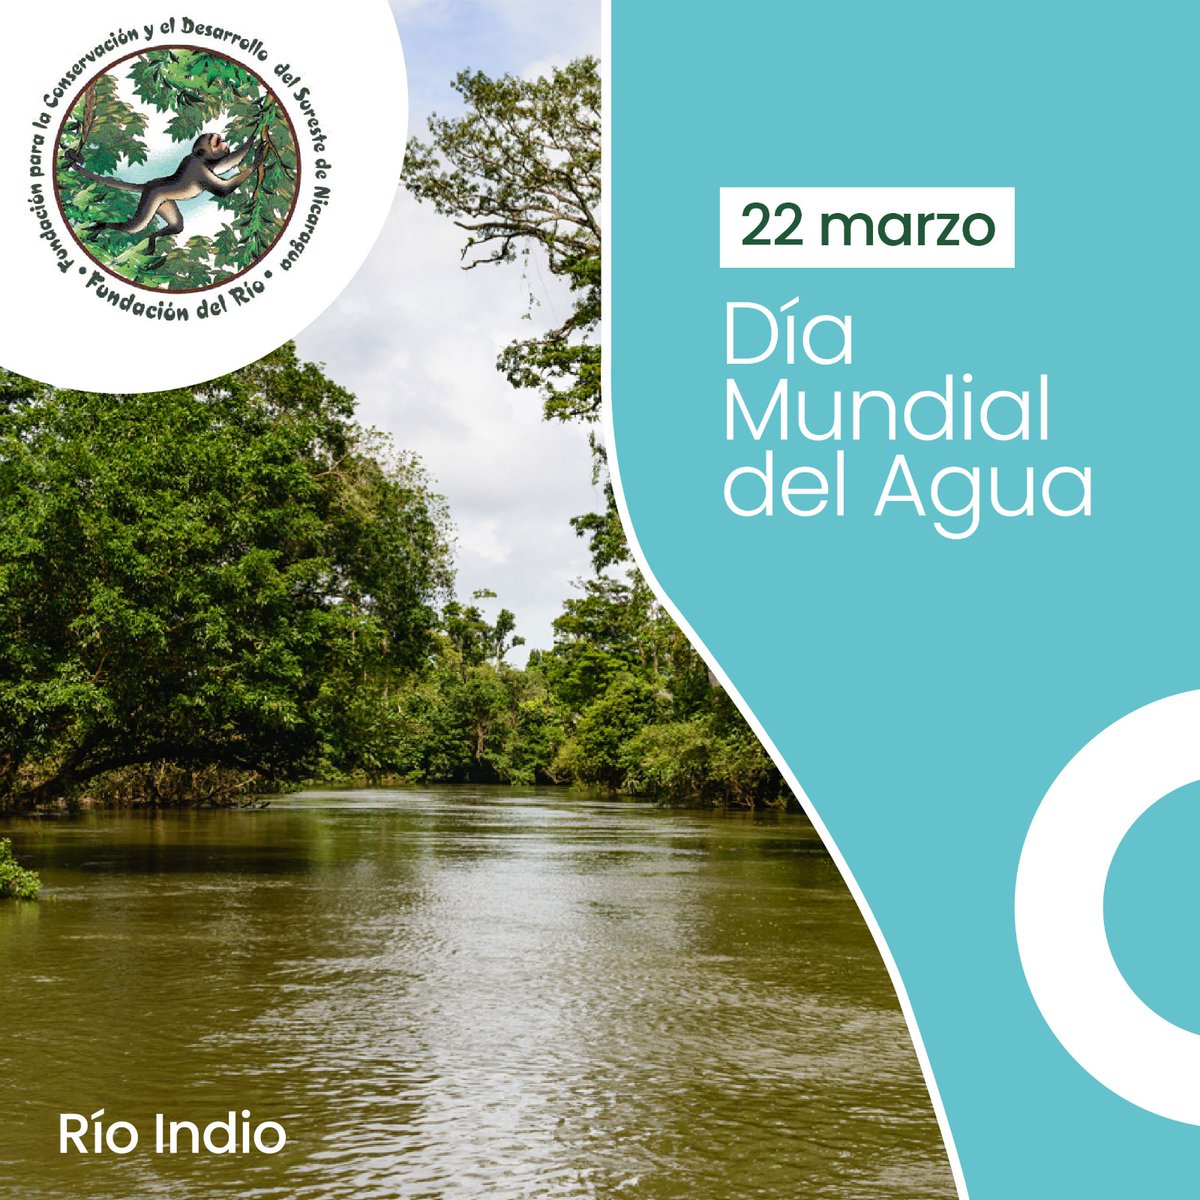 En el Día Mundial del Agua, adoptamos el lema 'Agua para la paz'. Instamos a unir esfuerzos a través de acciones locales para promover la armonía entre las comunidades mediante el uso justo y sostenible del agua #AguaparalaPaz #Agua #Nicaragua